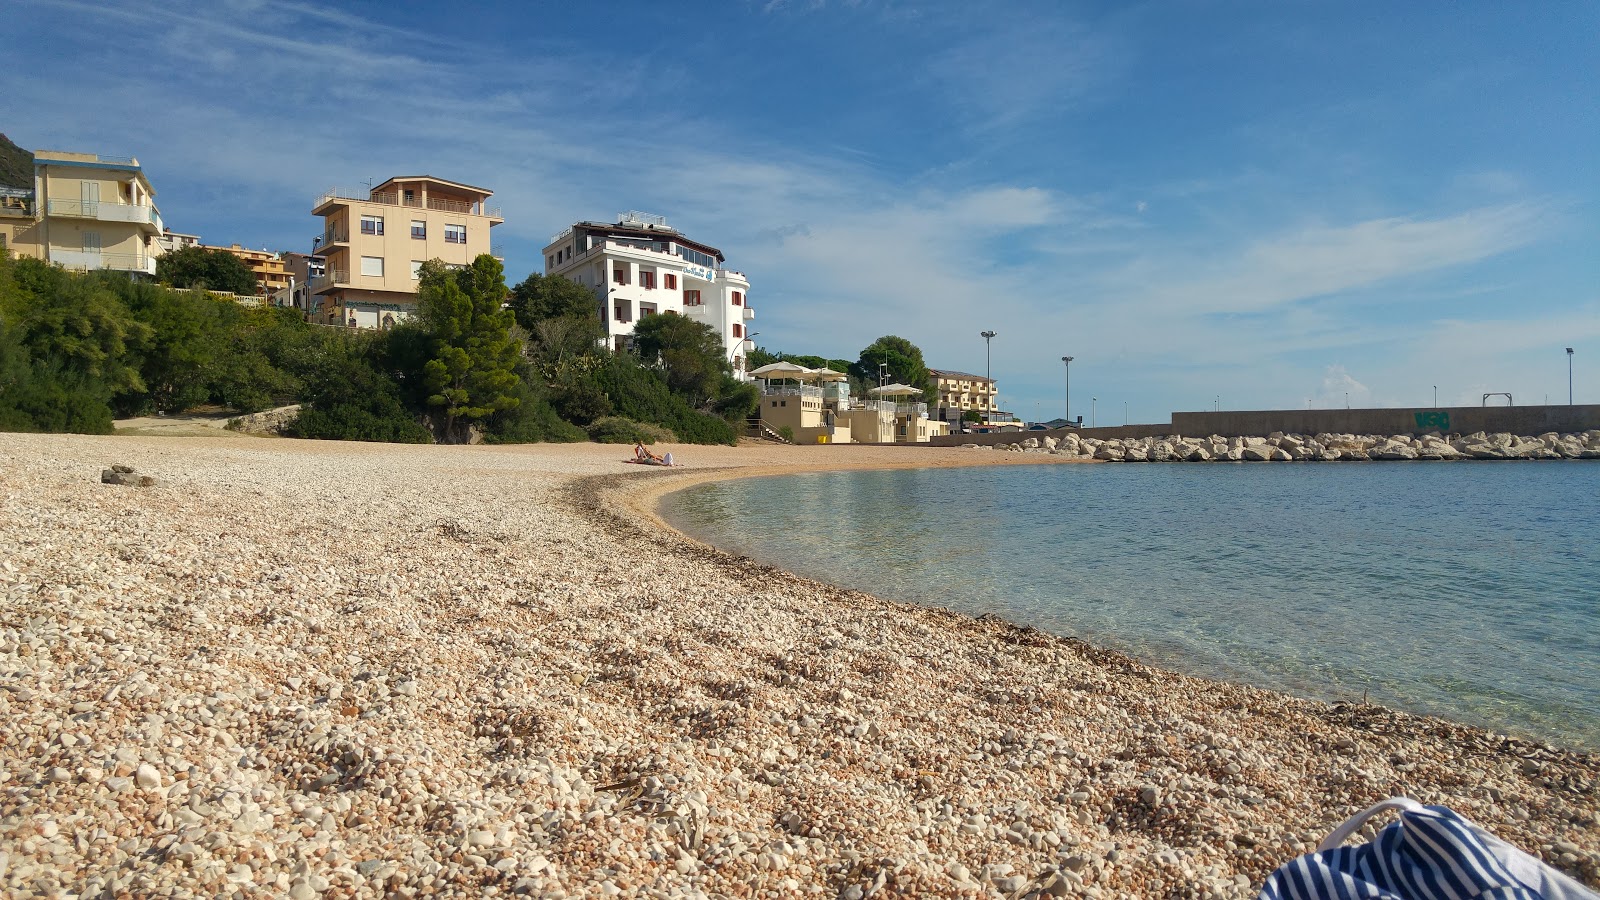 Foto av Spiaggia Di Cala Gonone och bosättningen